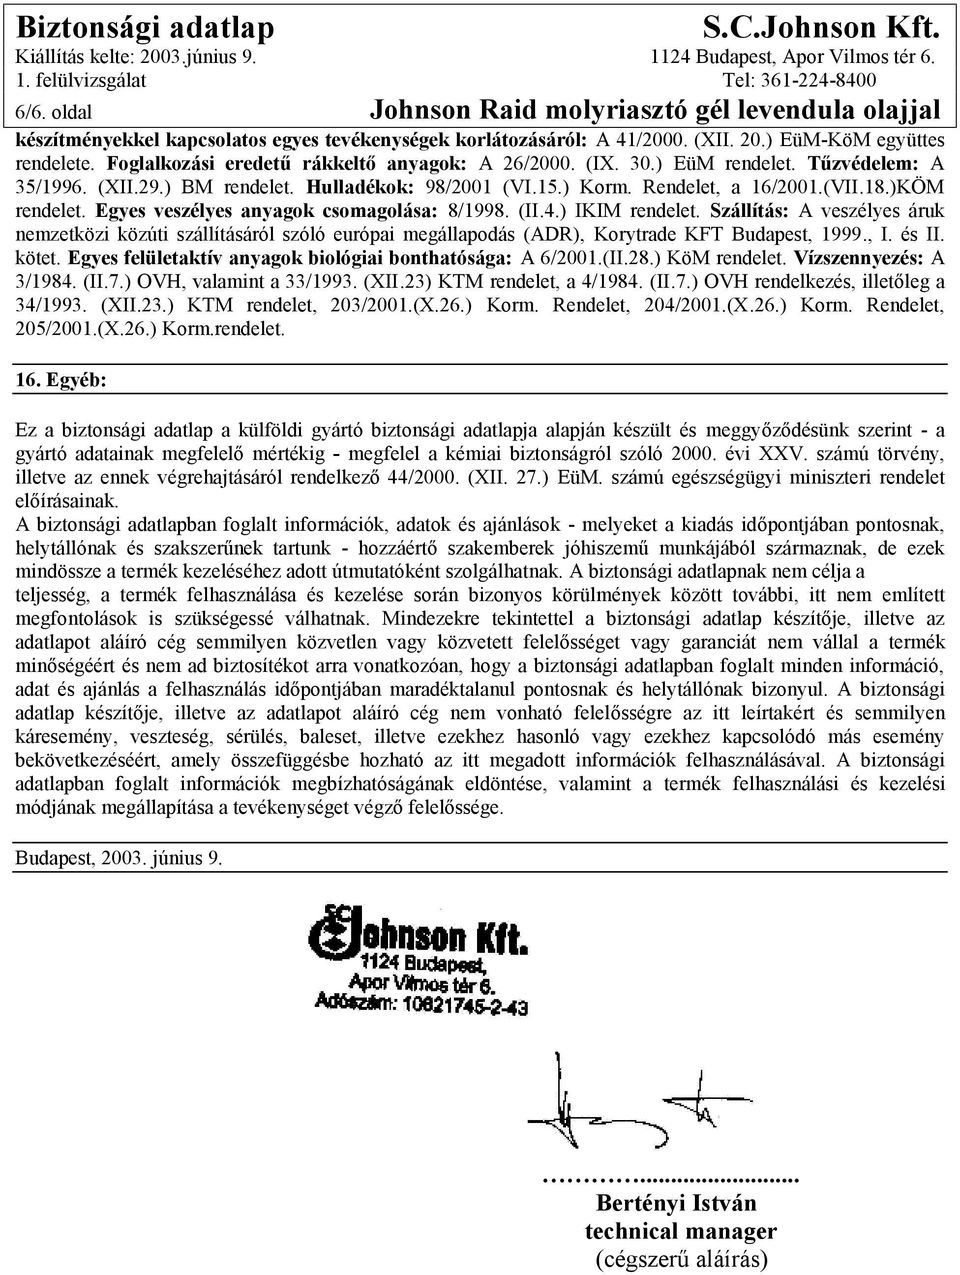 Egyes veszélyes anyagok csomagolása: 8/1998. (II.4.) IKIM rendelet. Szállítás: A veszélyes áruk nemzetközi közúti szállításáról szóló európai megállapodás (ADR), Korytrade KFT Budapest, 1999., I.